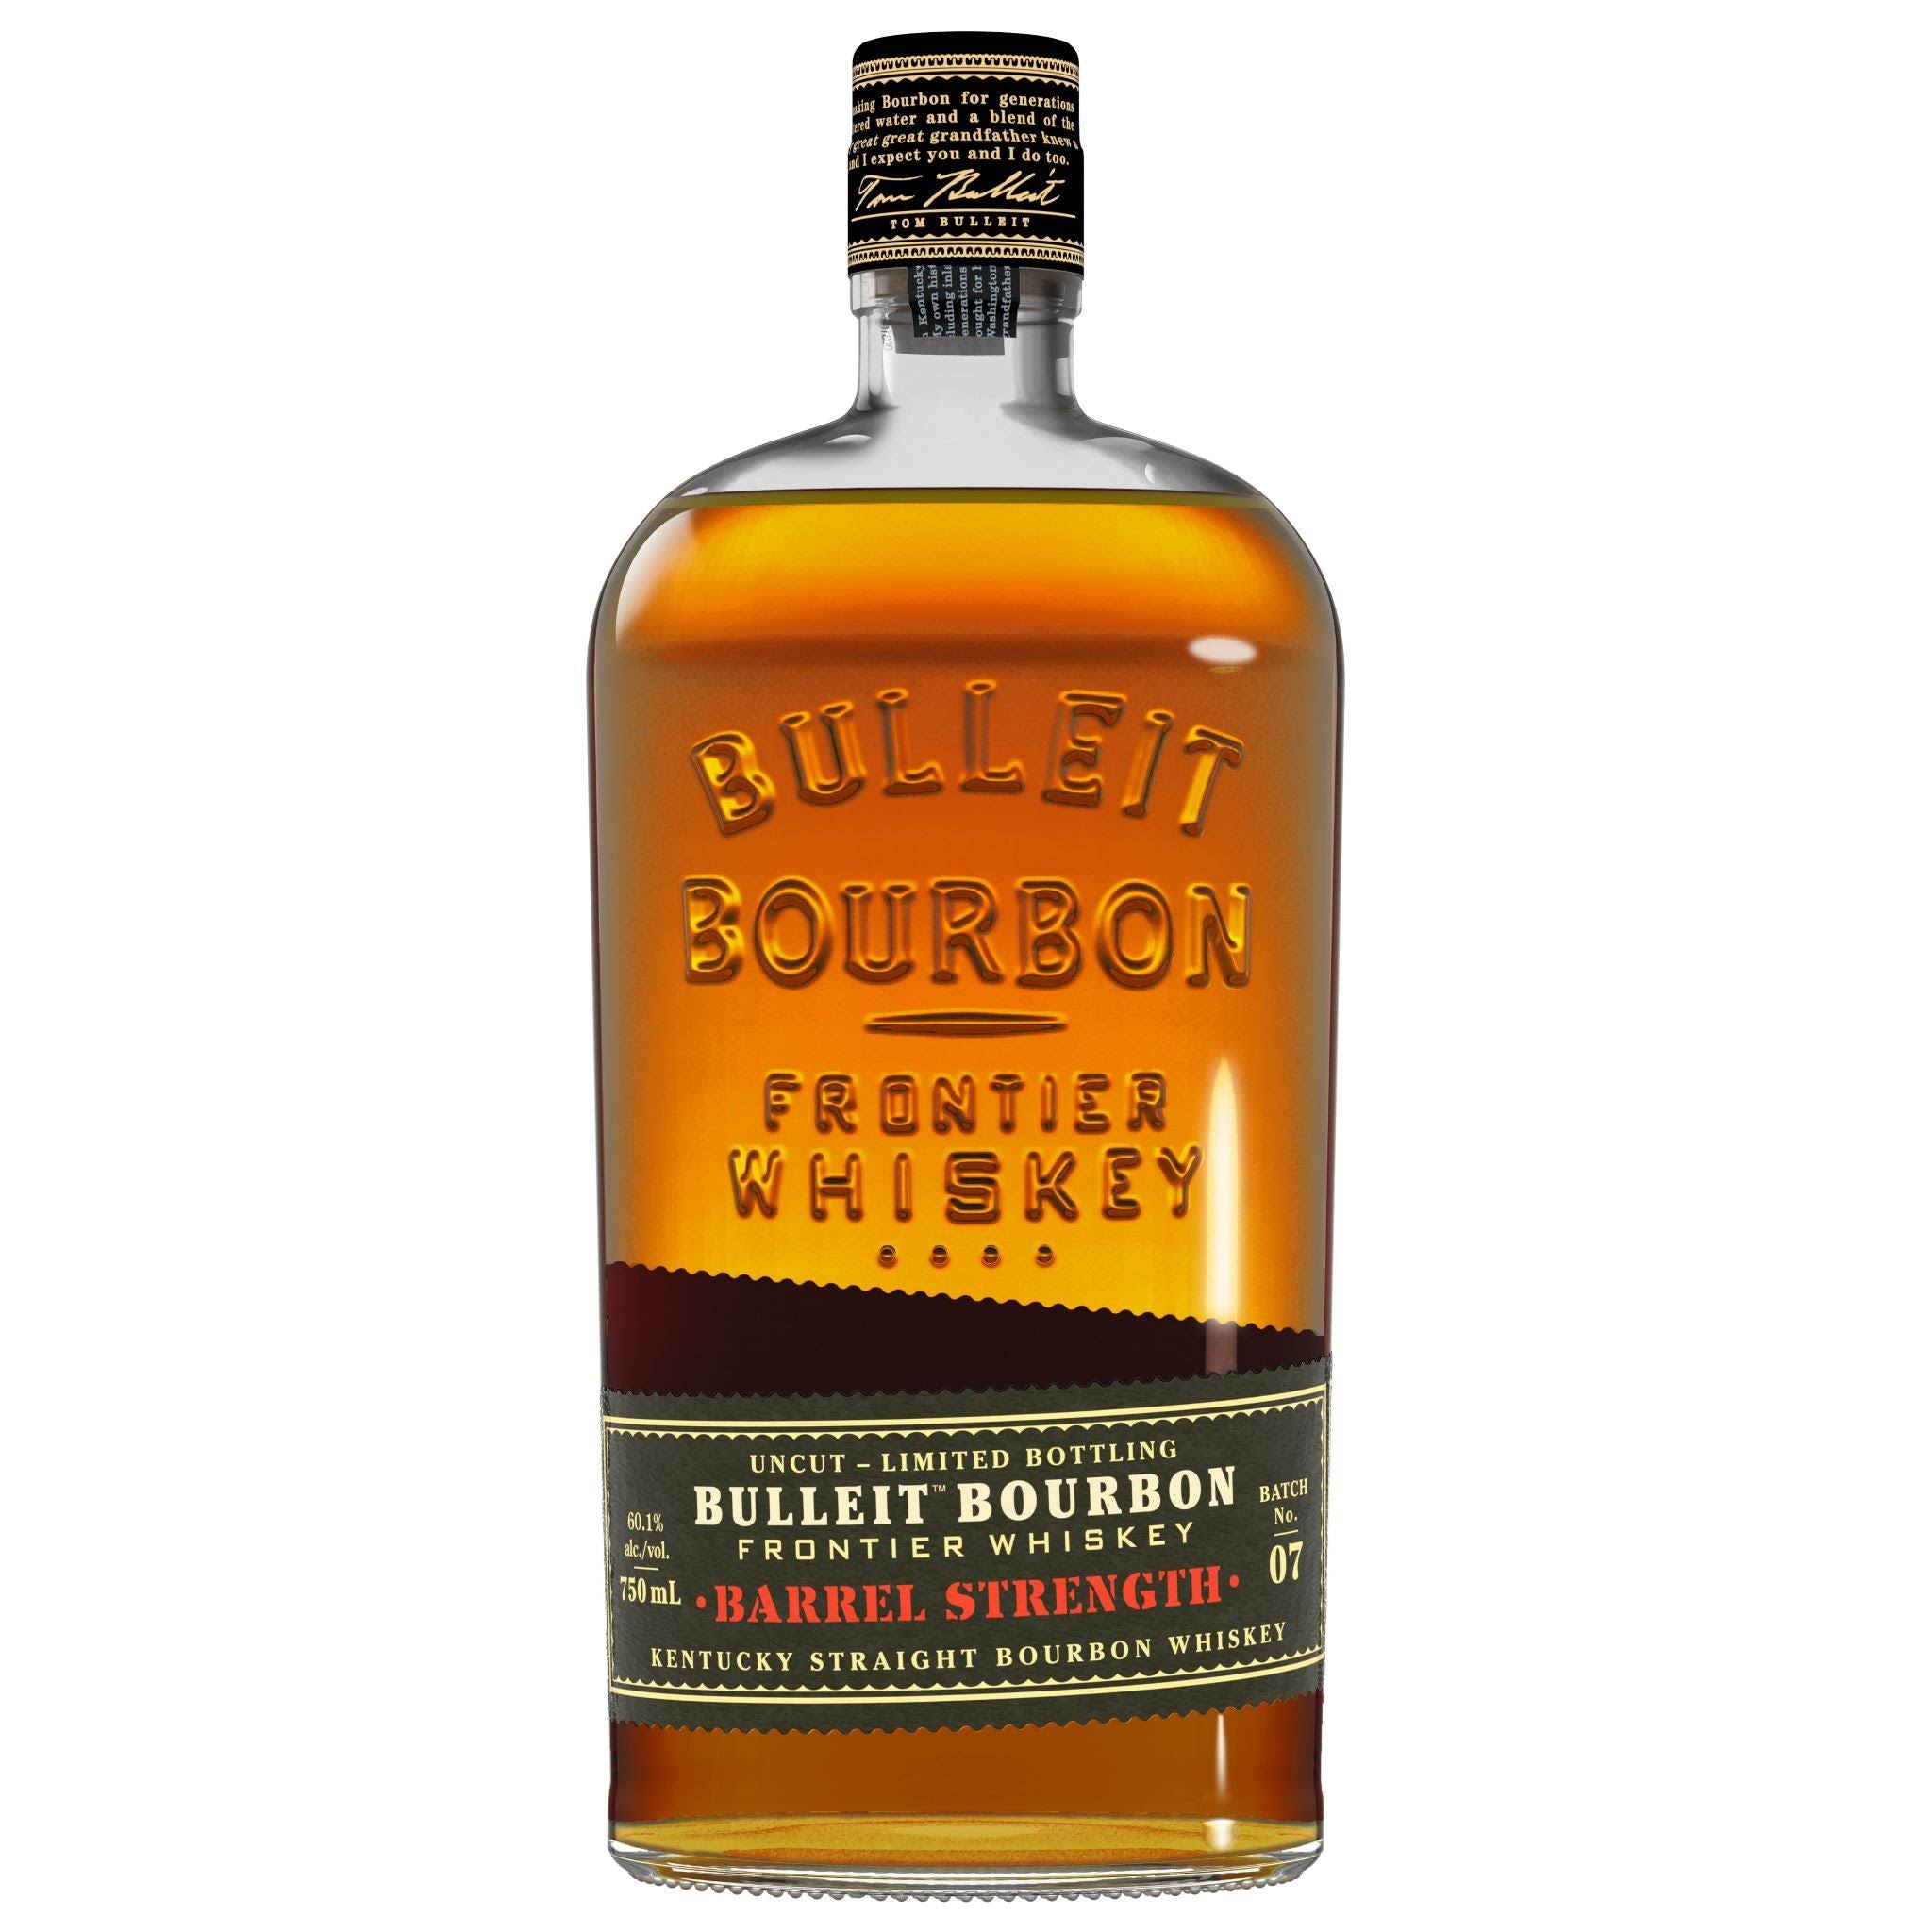 Bulleit 'Barrel Strength' Kentucky Straight Bourbon Whiskey